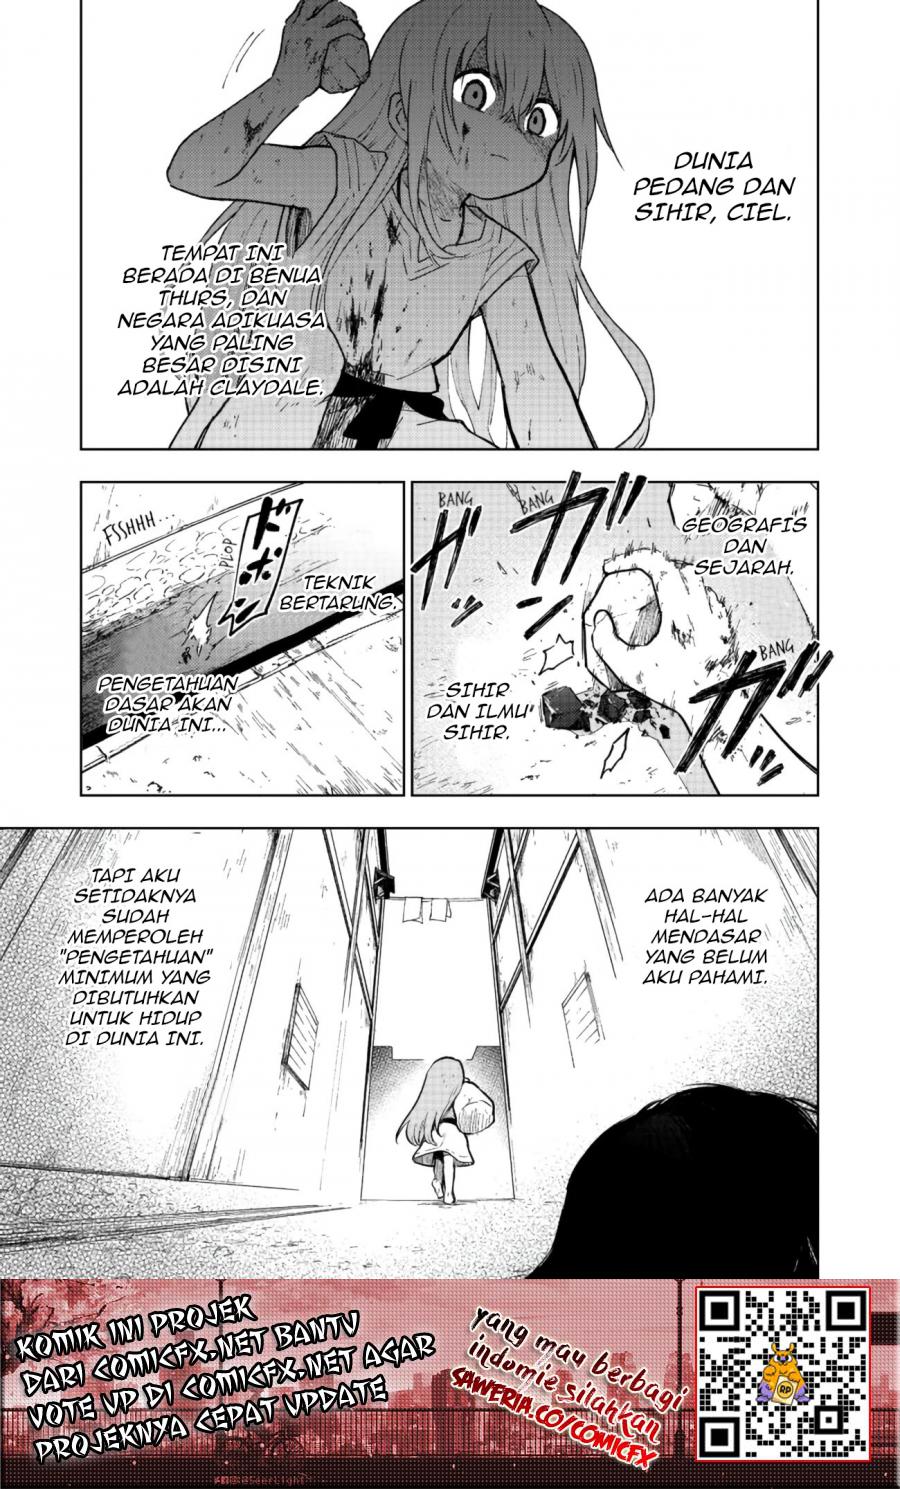 Otome Game No Heroine De Saikyou Survival Chapter 1